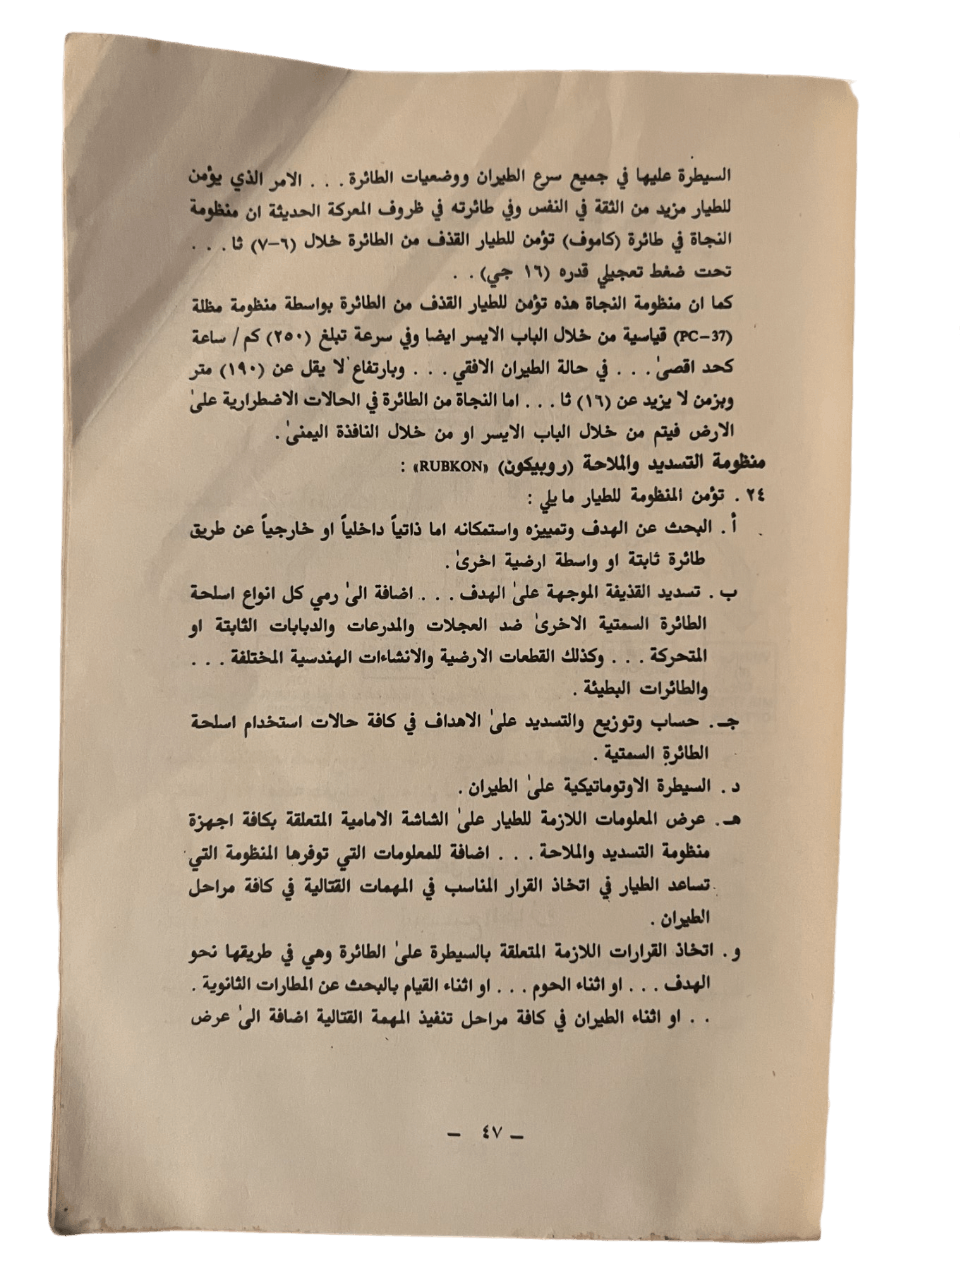 Al-Samtiyat: Mukhtarat 3skaria (The Azimuth: A Military Anthology) - KHAJISTAN™